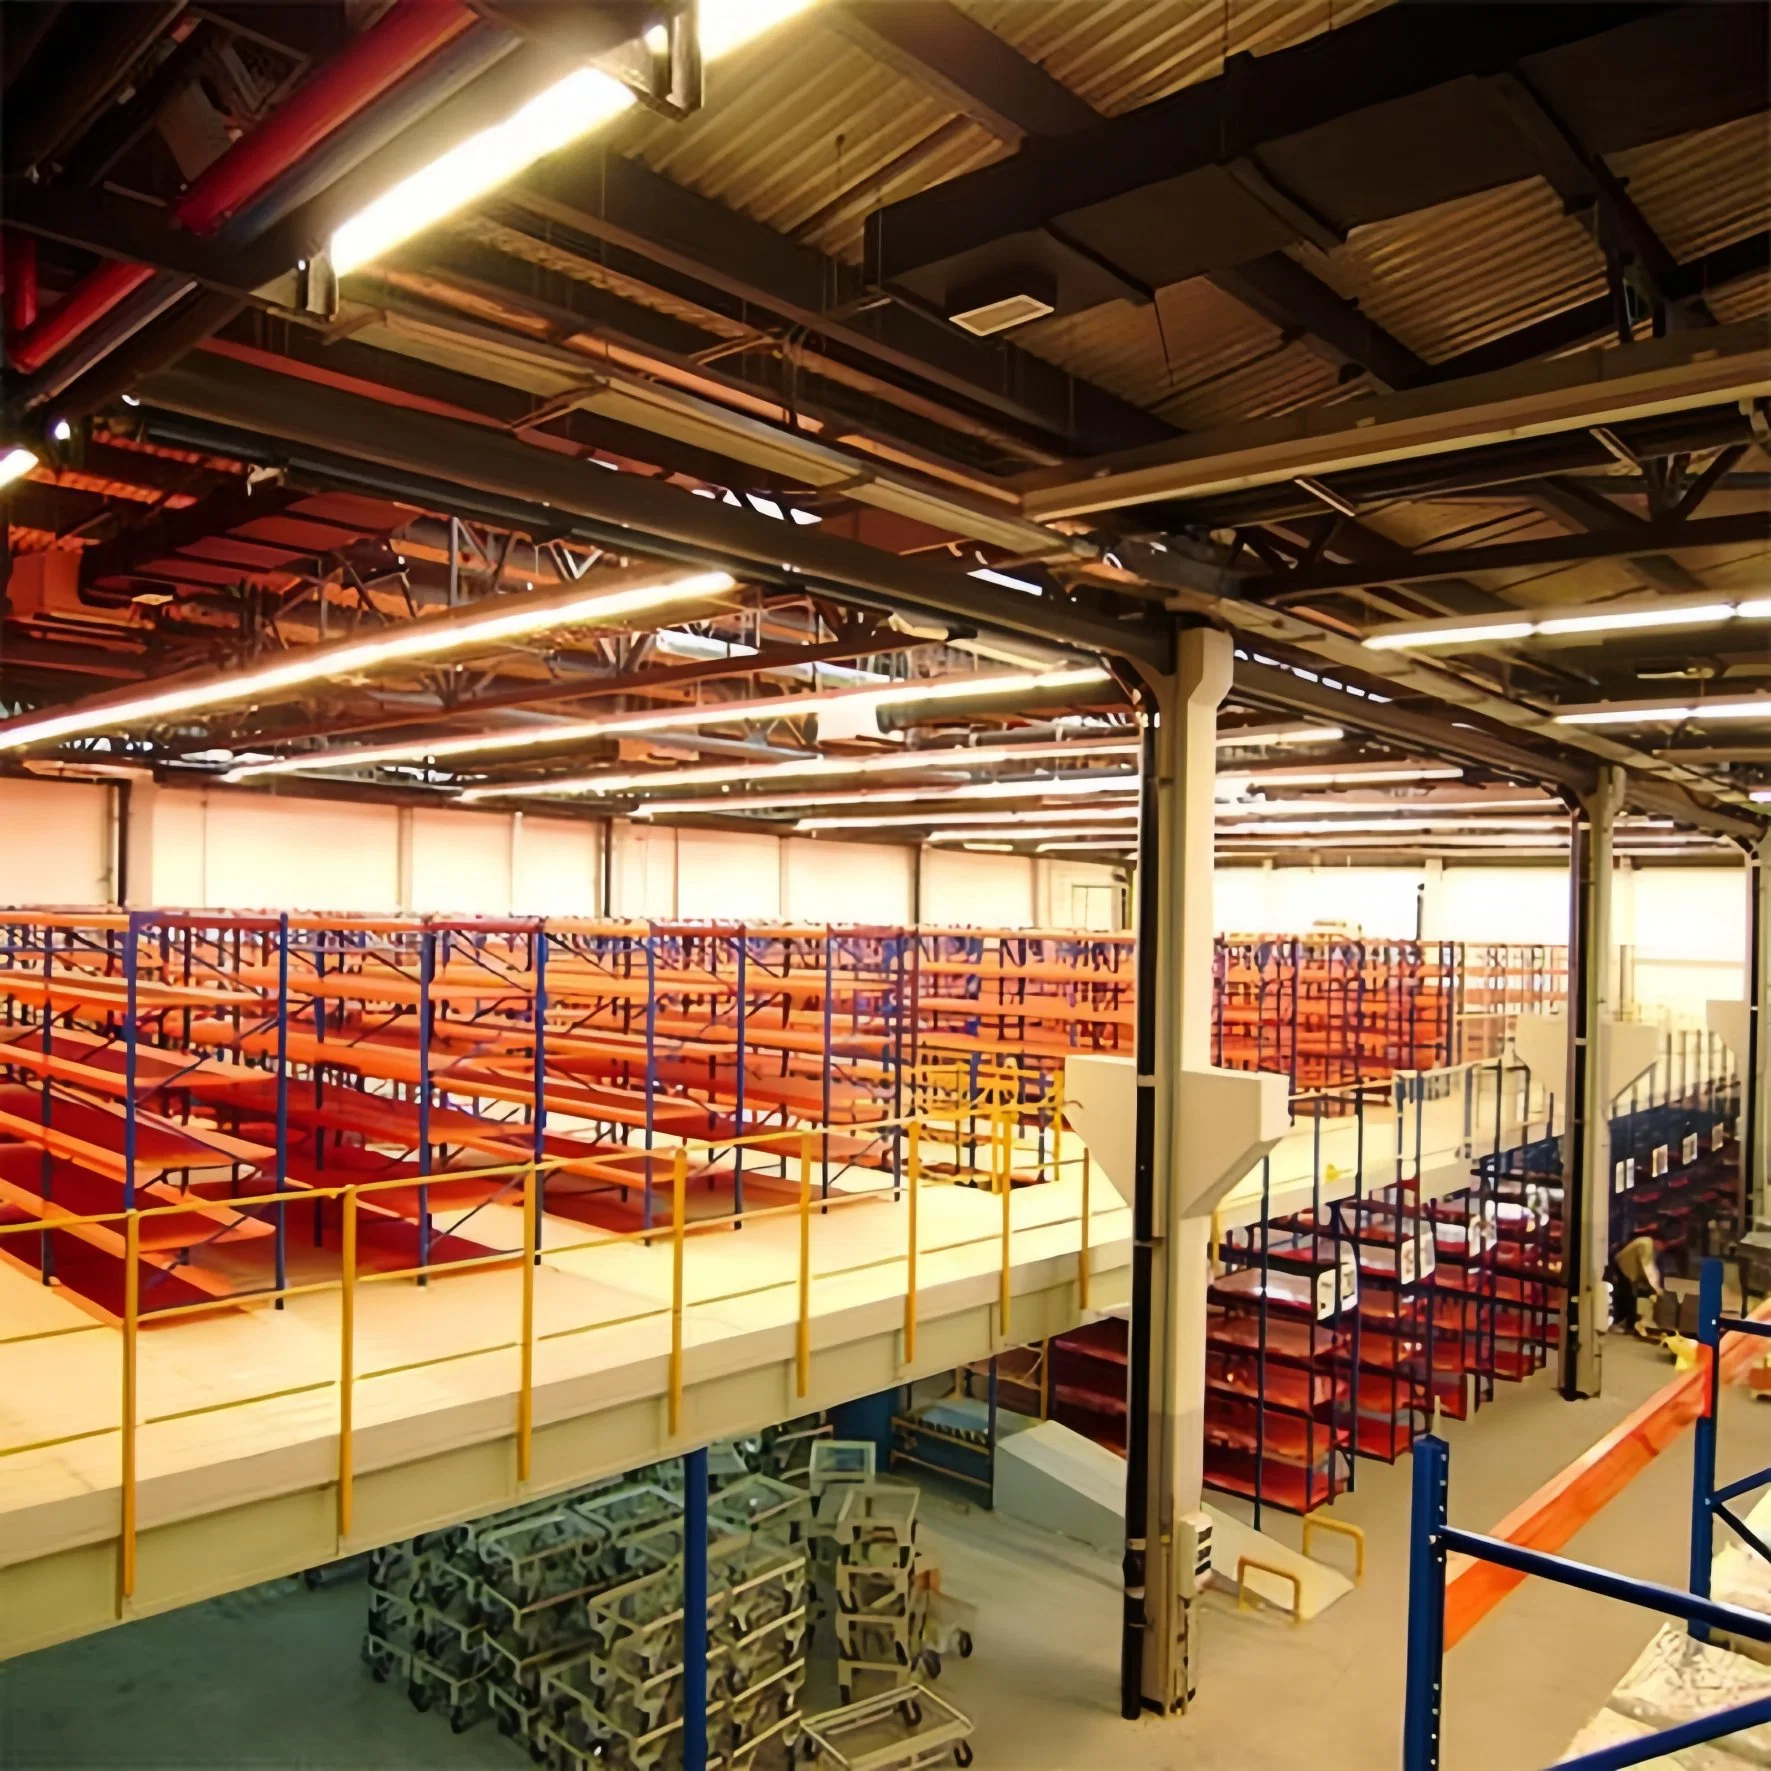 Customized Mezzanine Rack System Mezzanine Warehouse Storage Steel Loft Type Rack